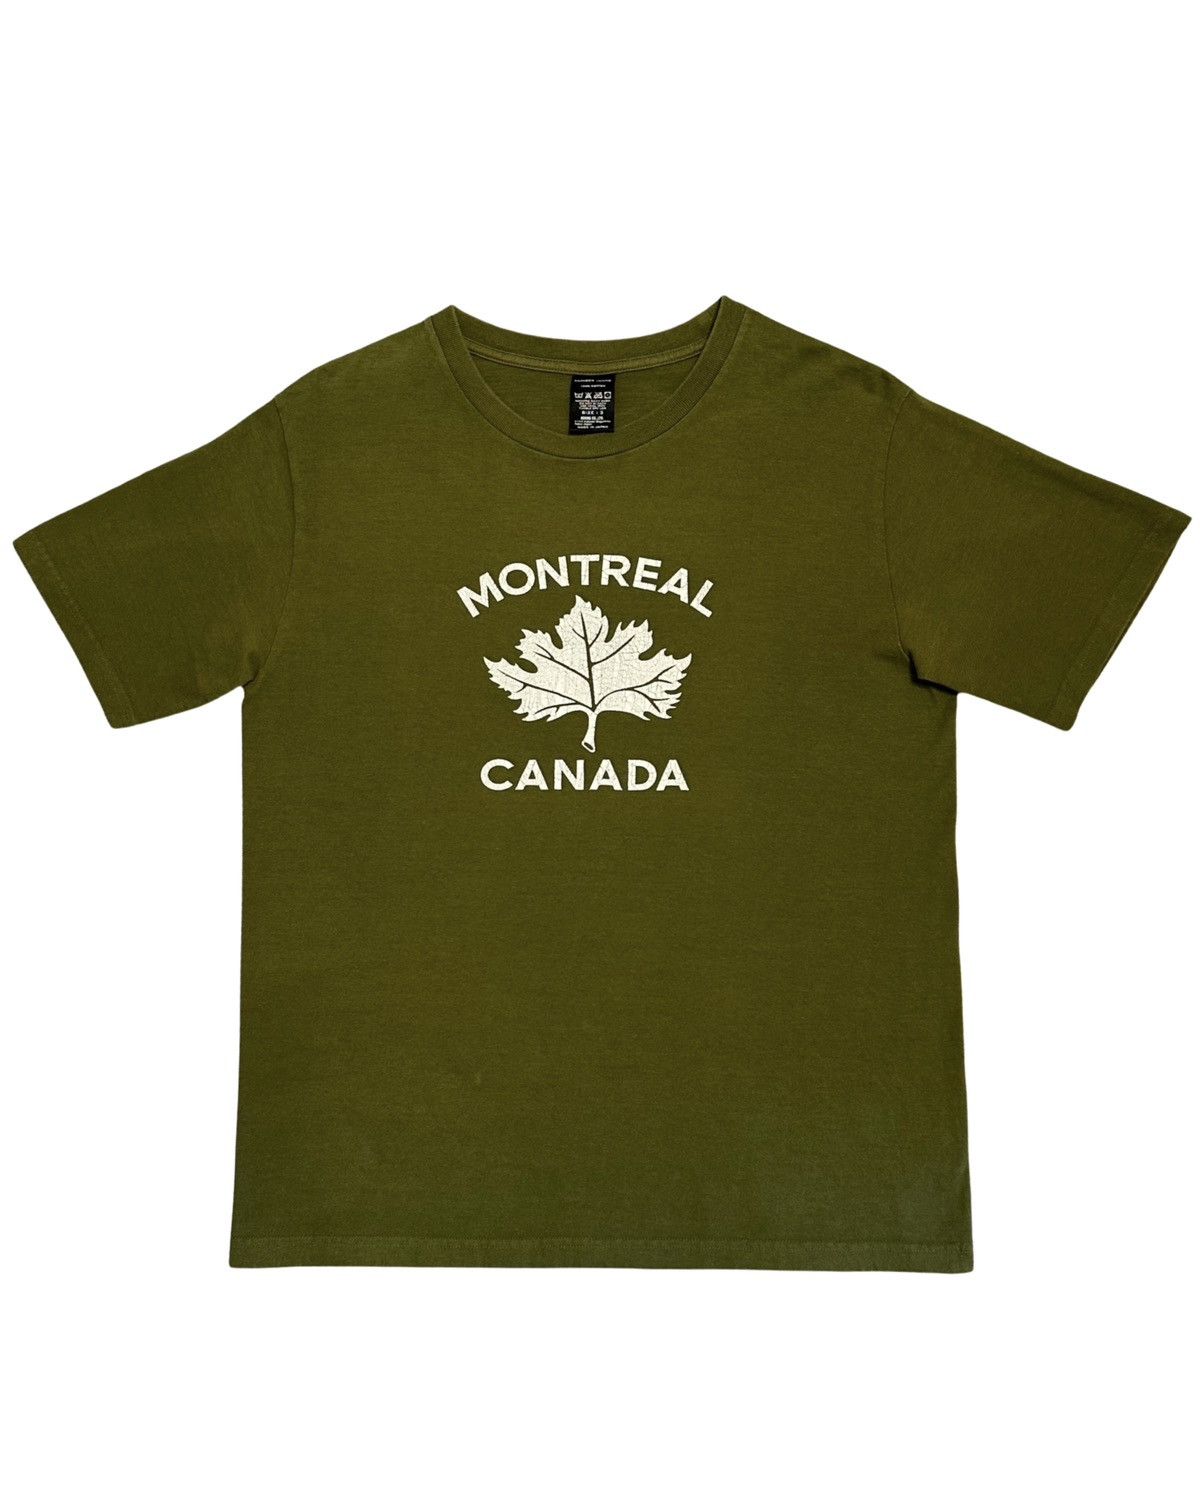 Number N Ine Montreal Tee | Grailed